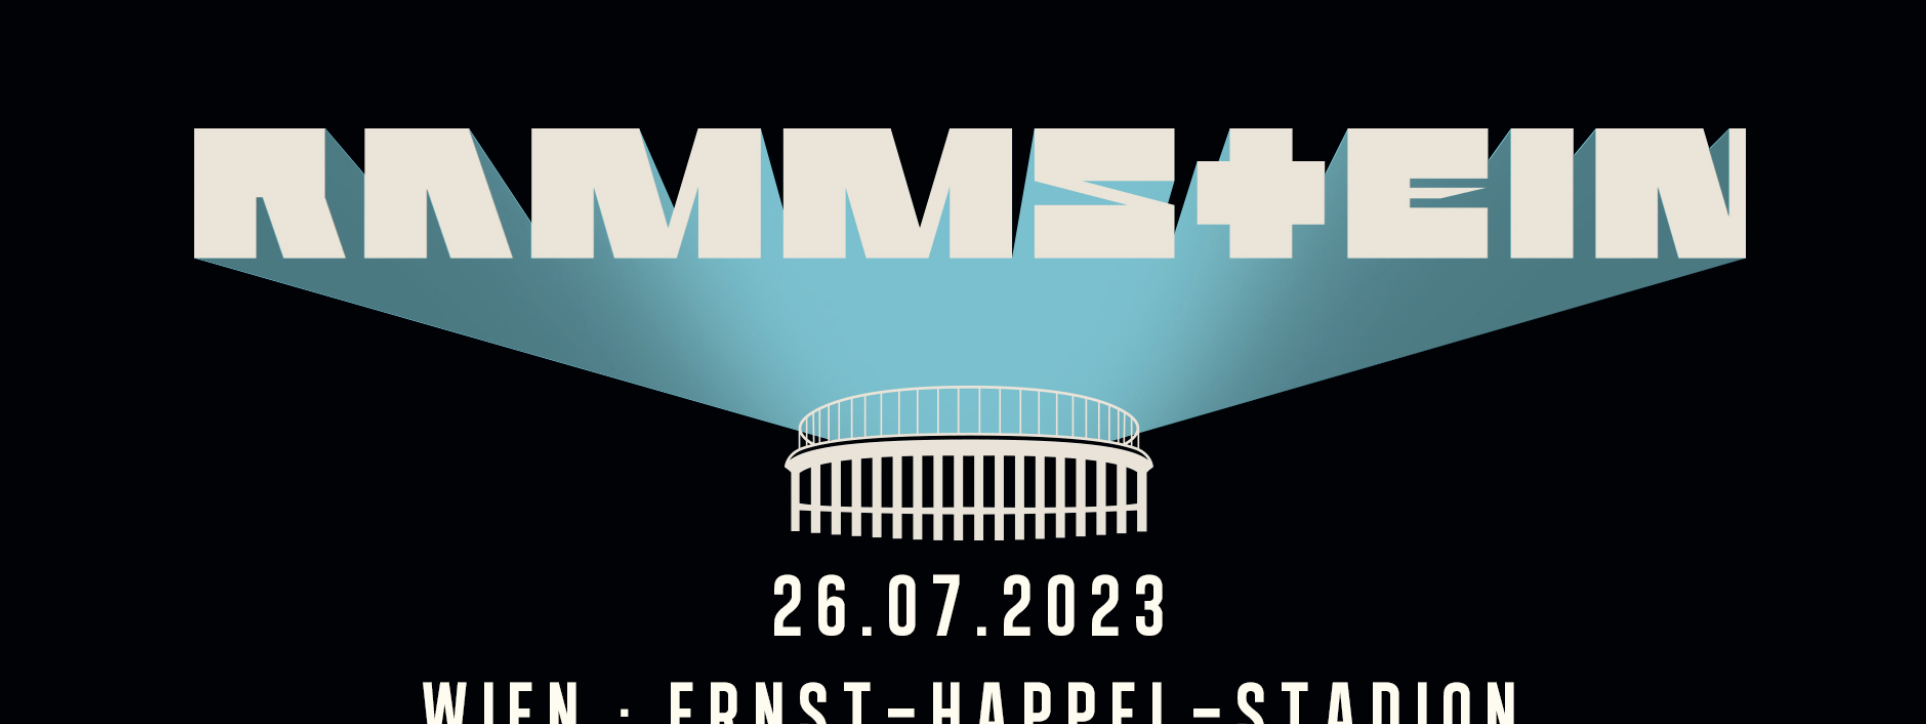 RAMMSTEIN am 26. July 2023 @ Ernst-Happel-Stadion.